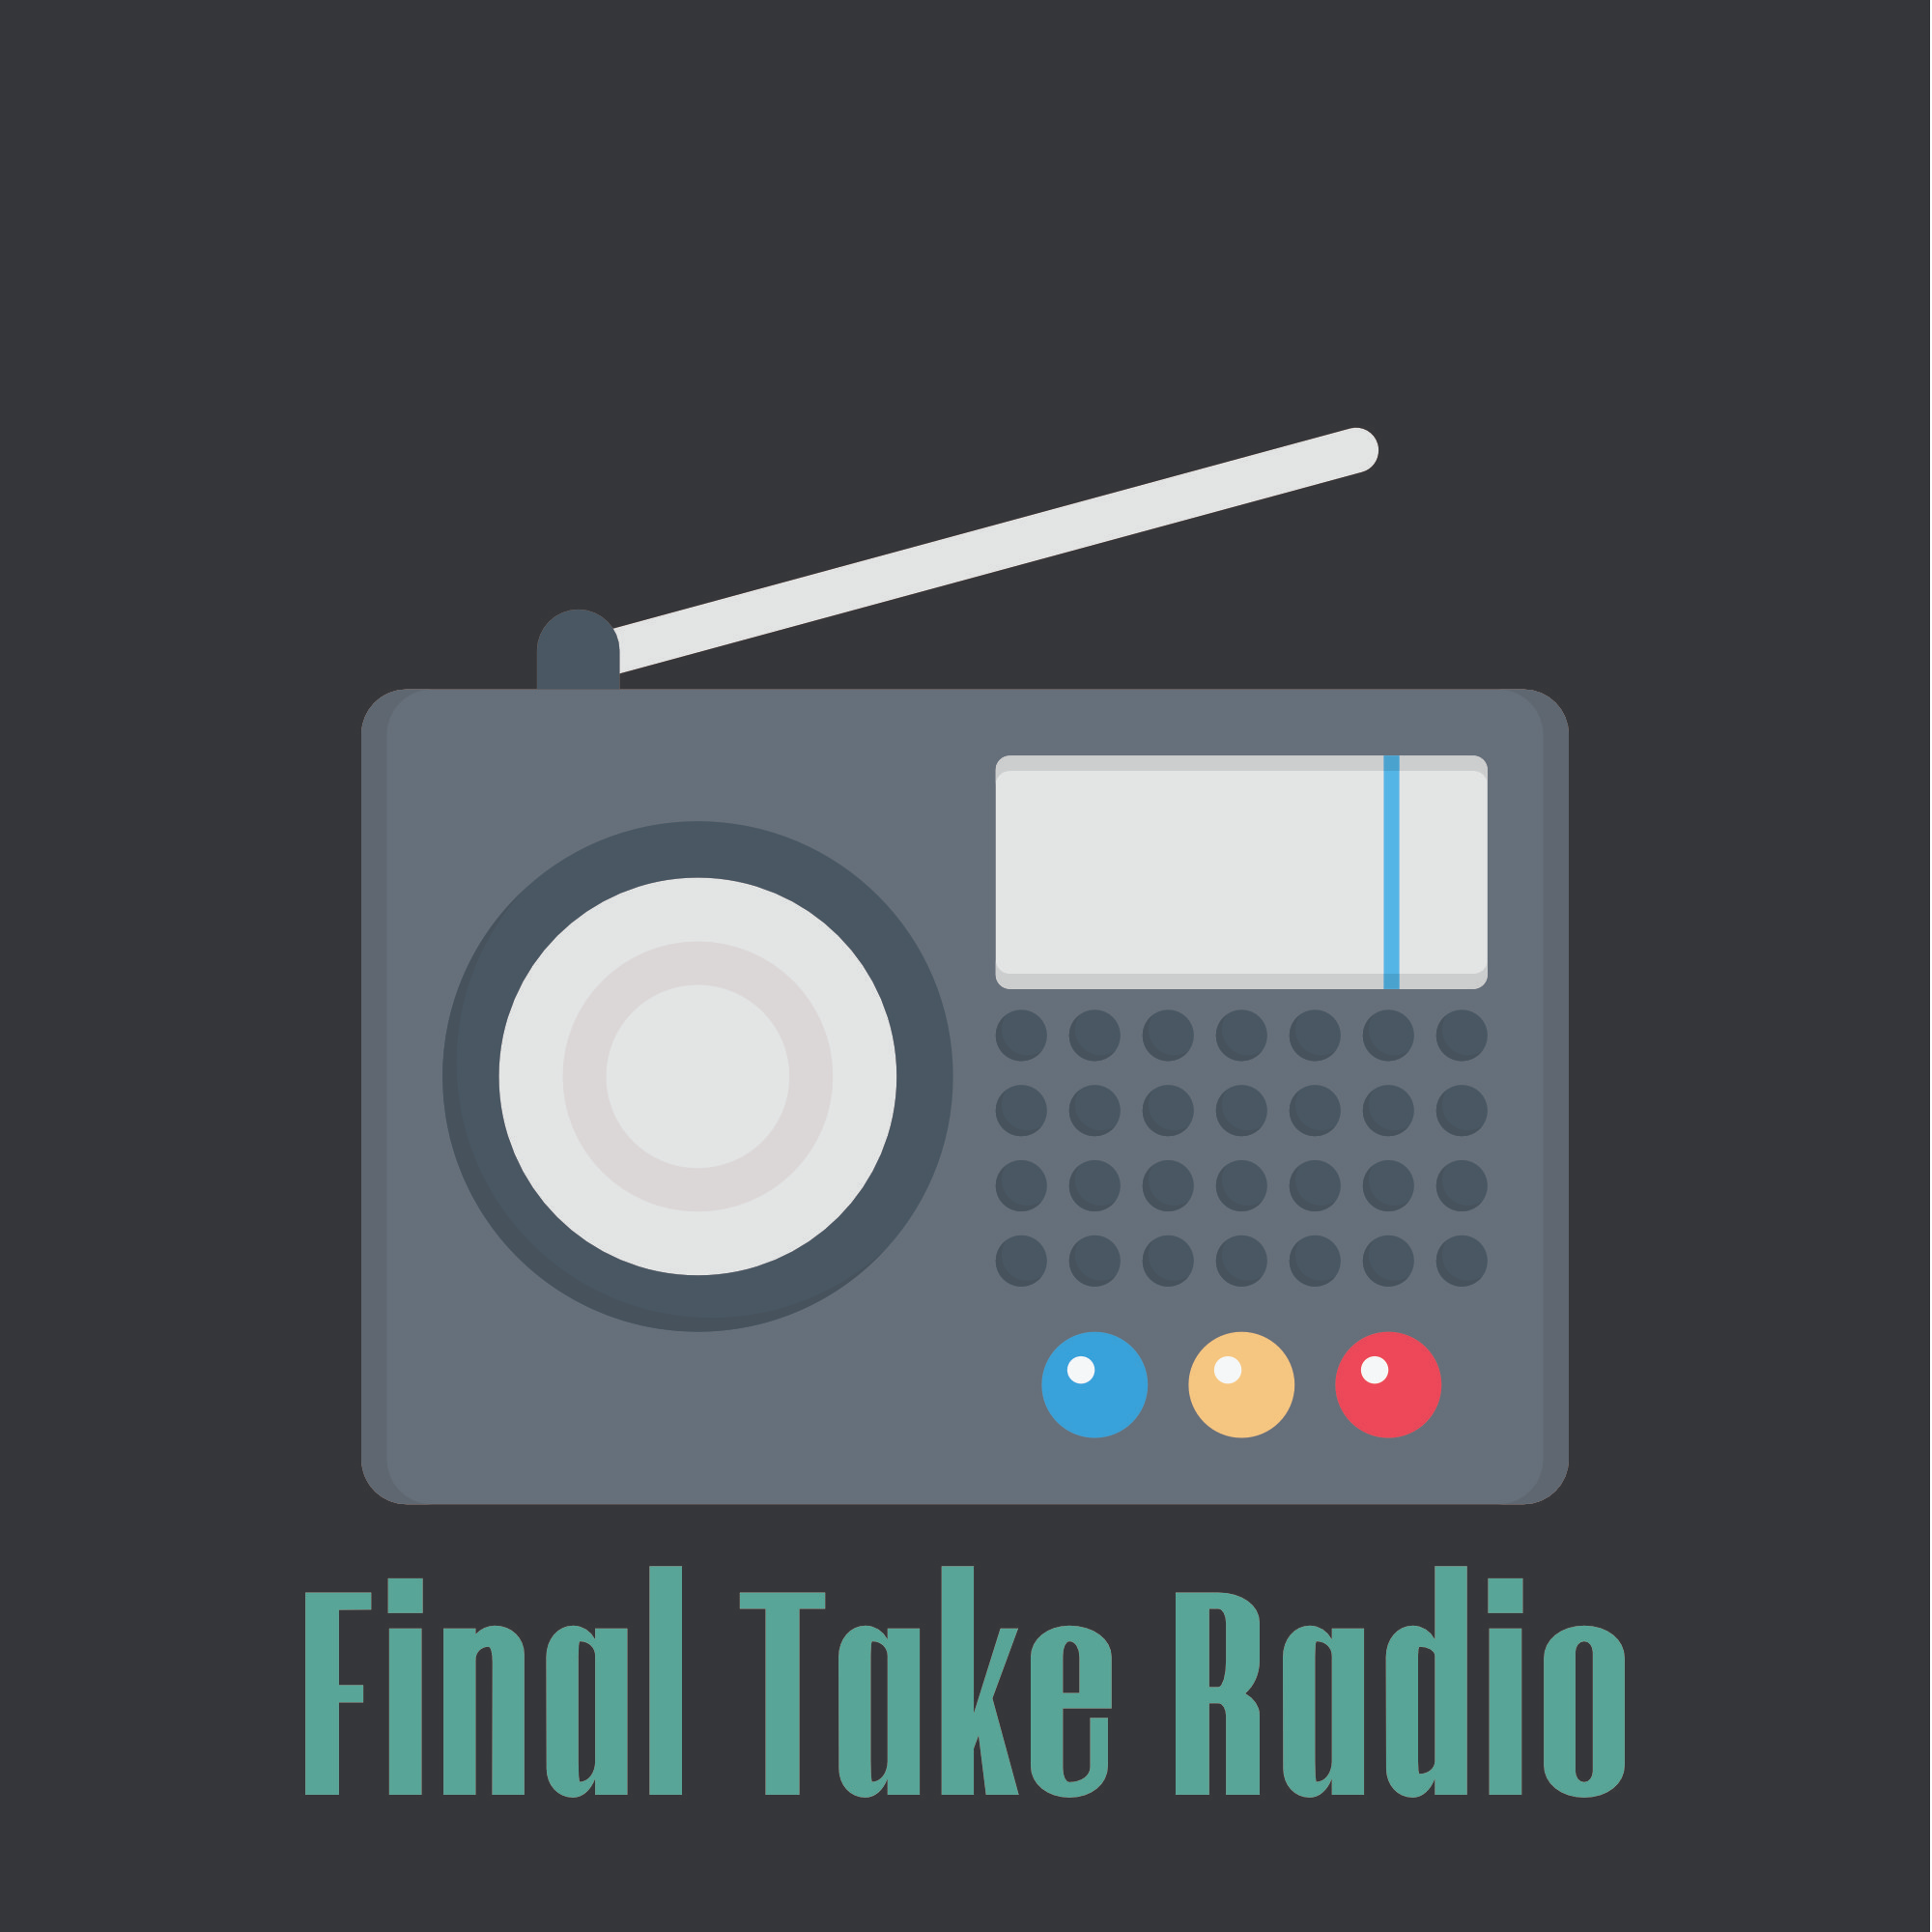 Final Take Radio